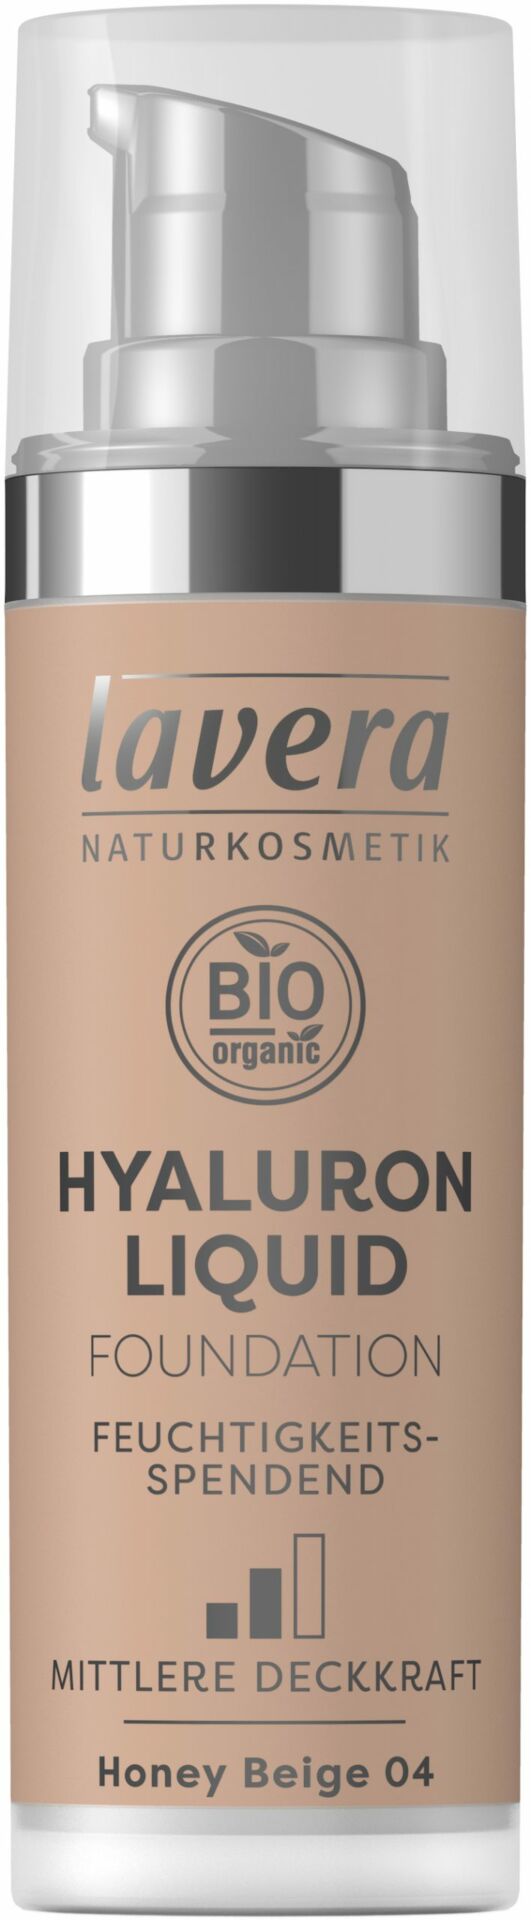 lavera HYALURON LIQUID FOUNDATION -Honey Beige 04- 30ml